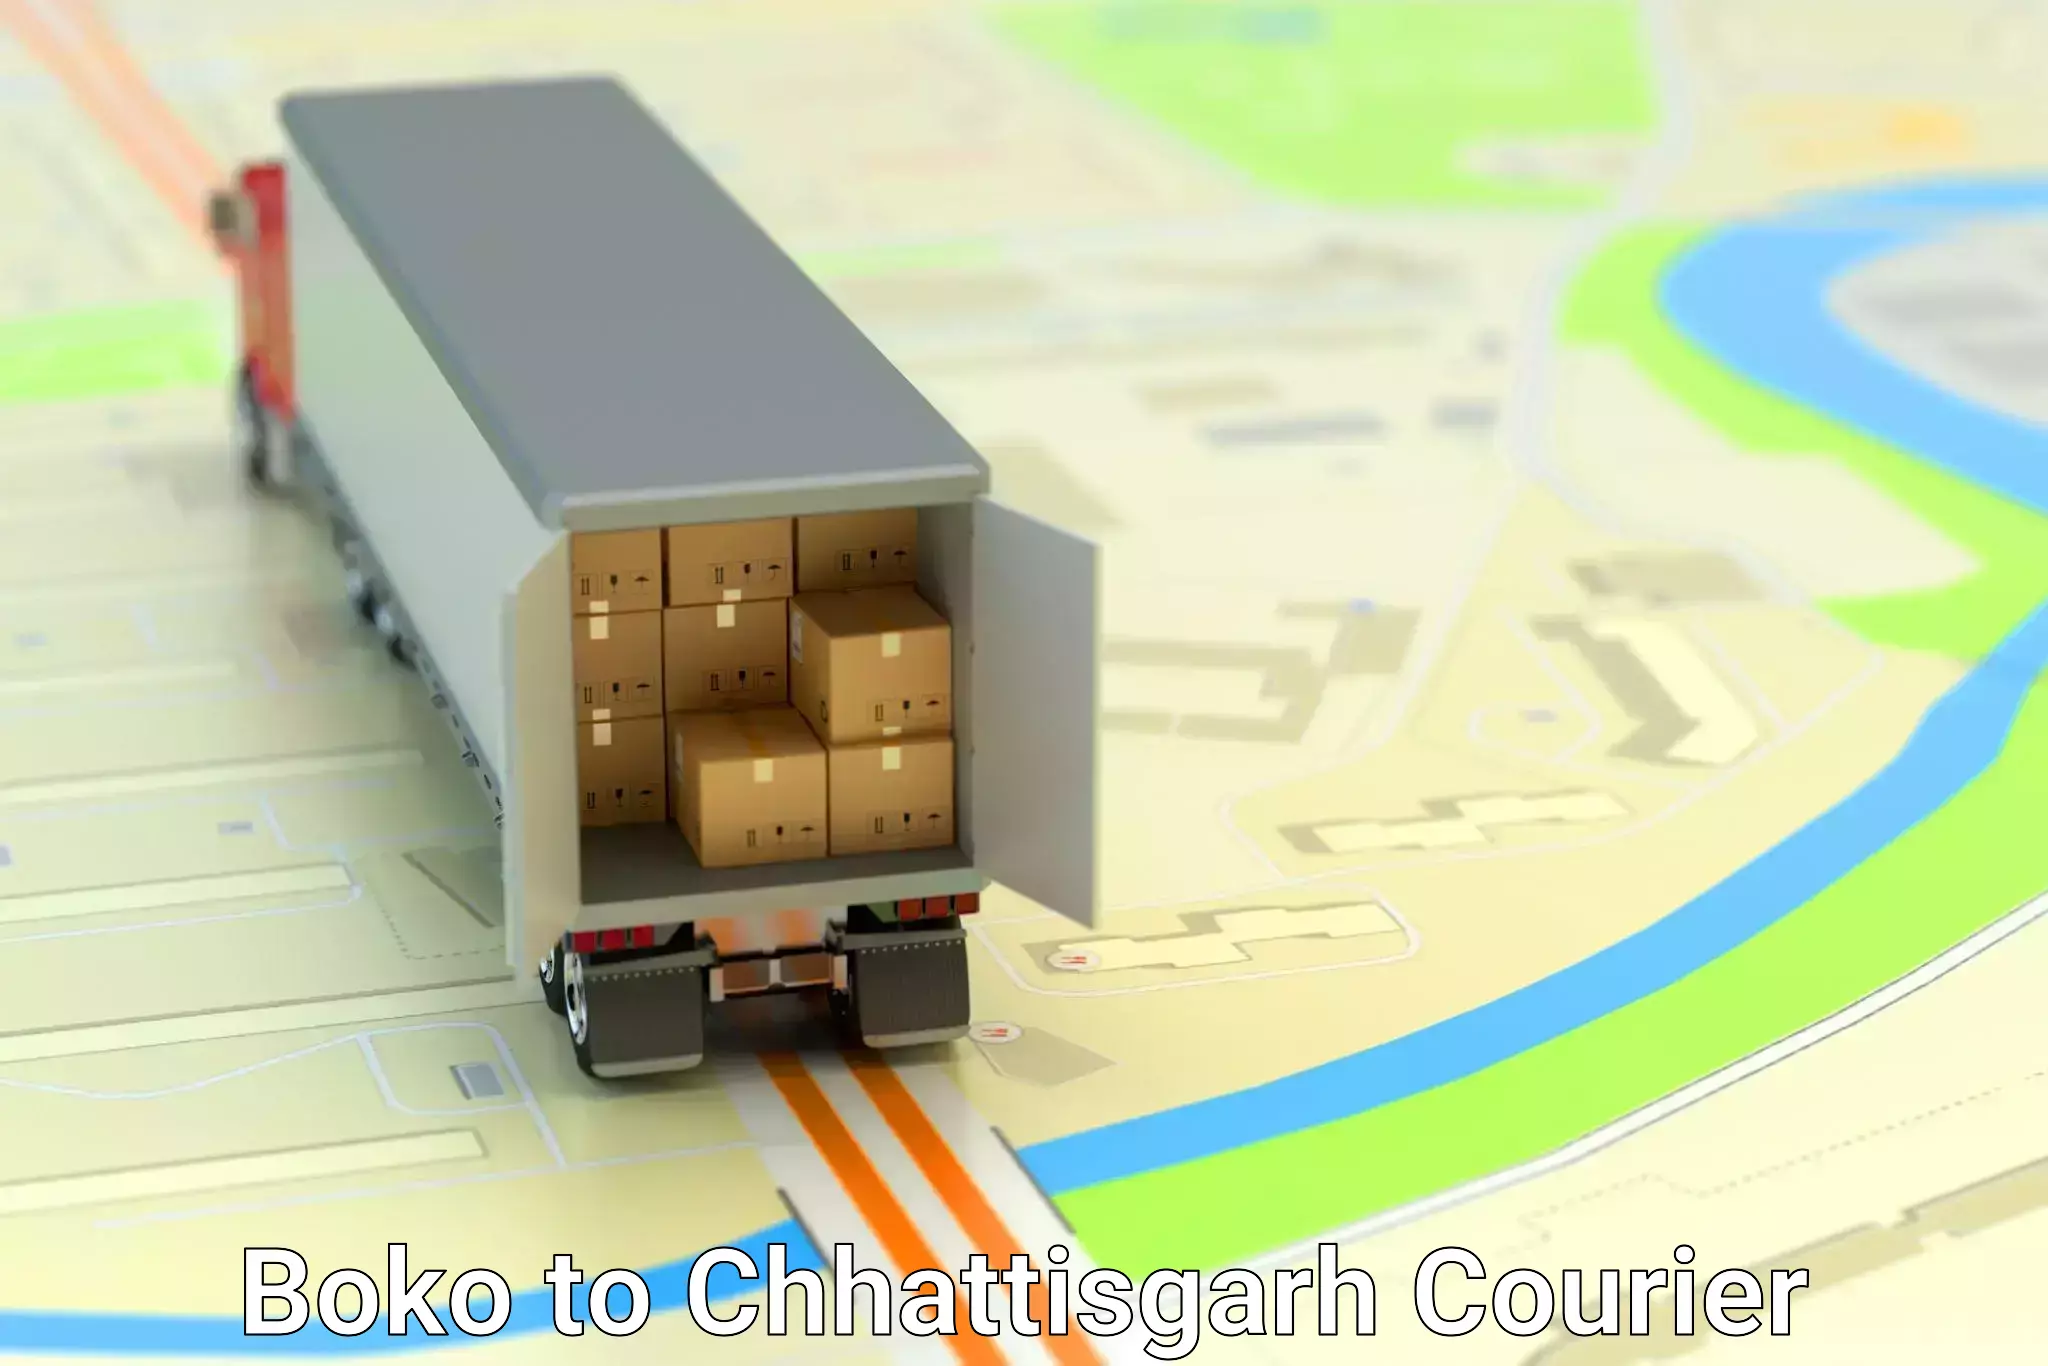 High-capacity courier solutions Boko to Korea Chhattisgarh